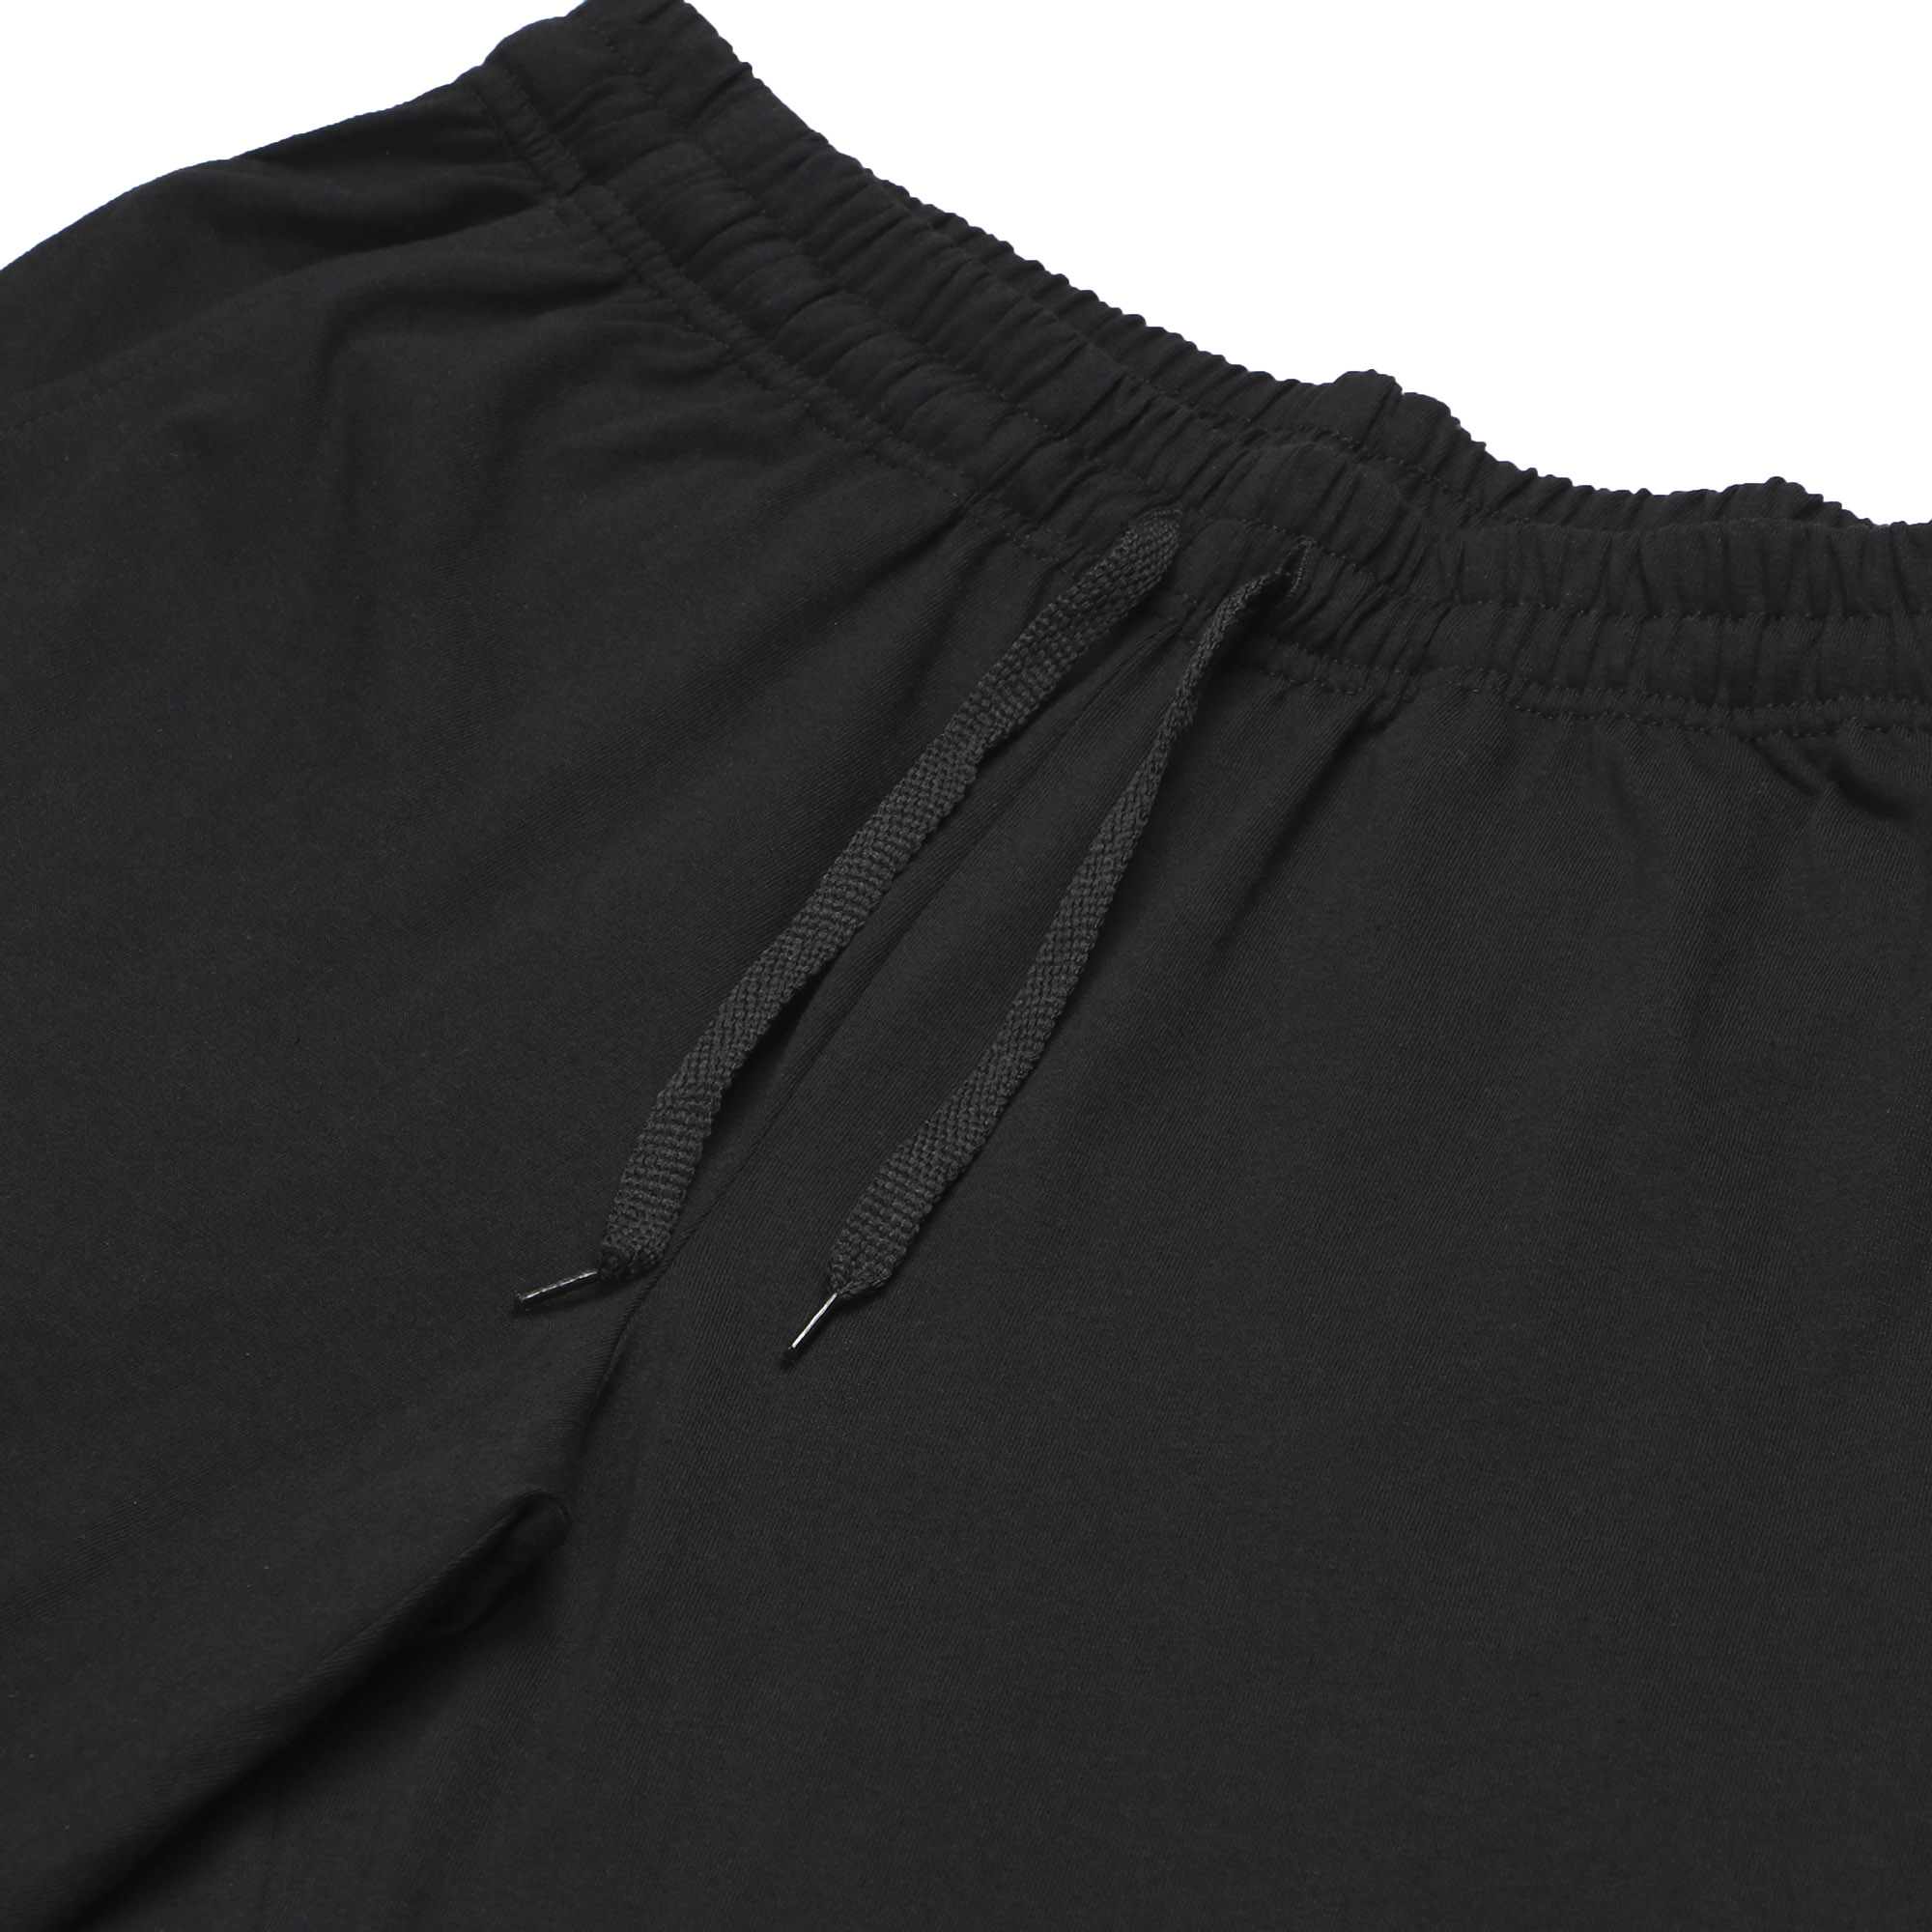 Мужские брюки Pantelemone PDB-021 46 черные, цвет черный, размер 46 - фото 2